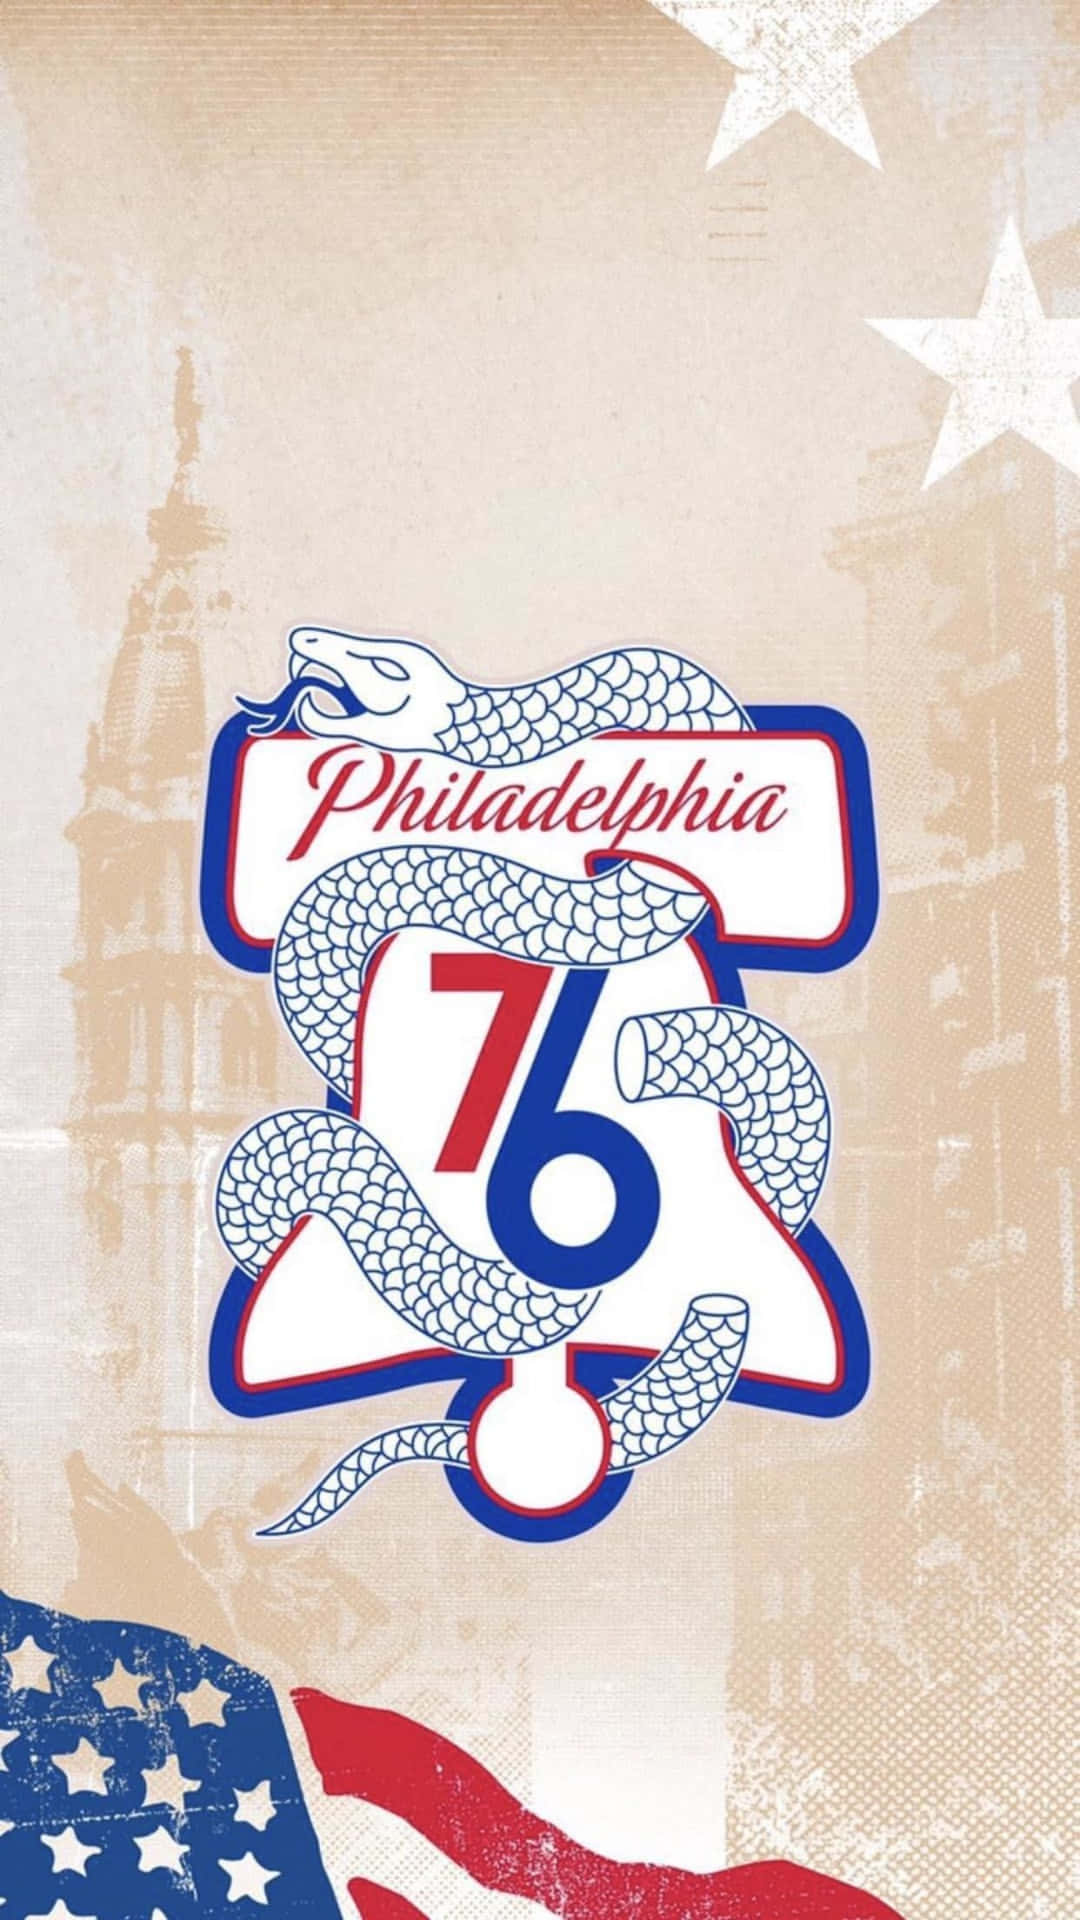 Philadephia 76 logo med amerikansk flag Wallpaper